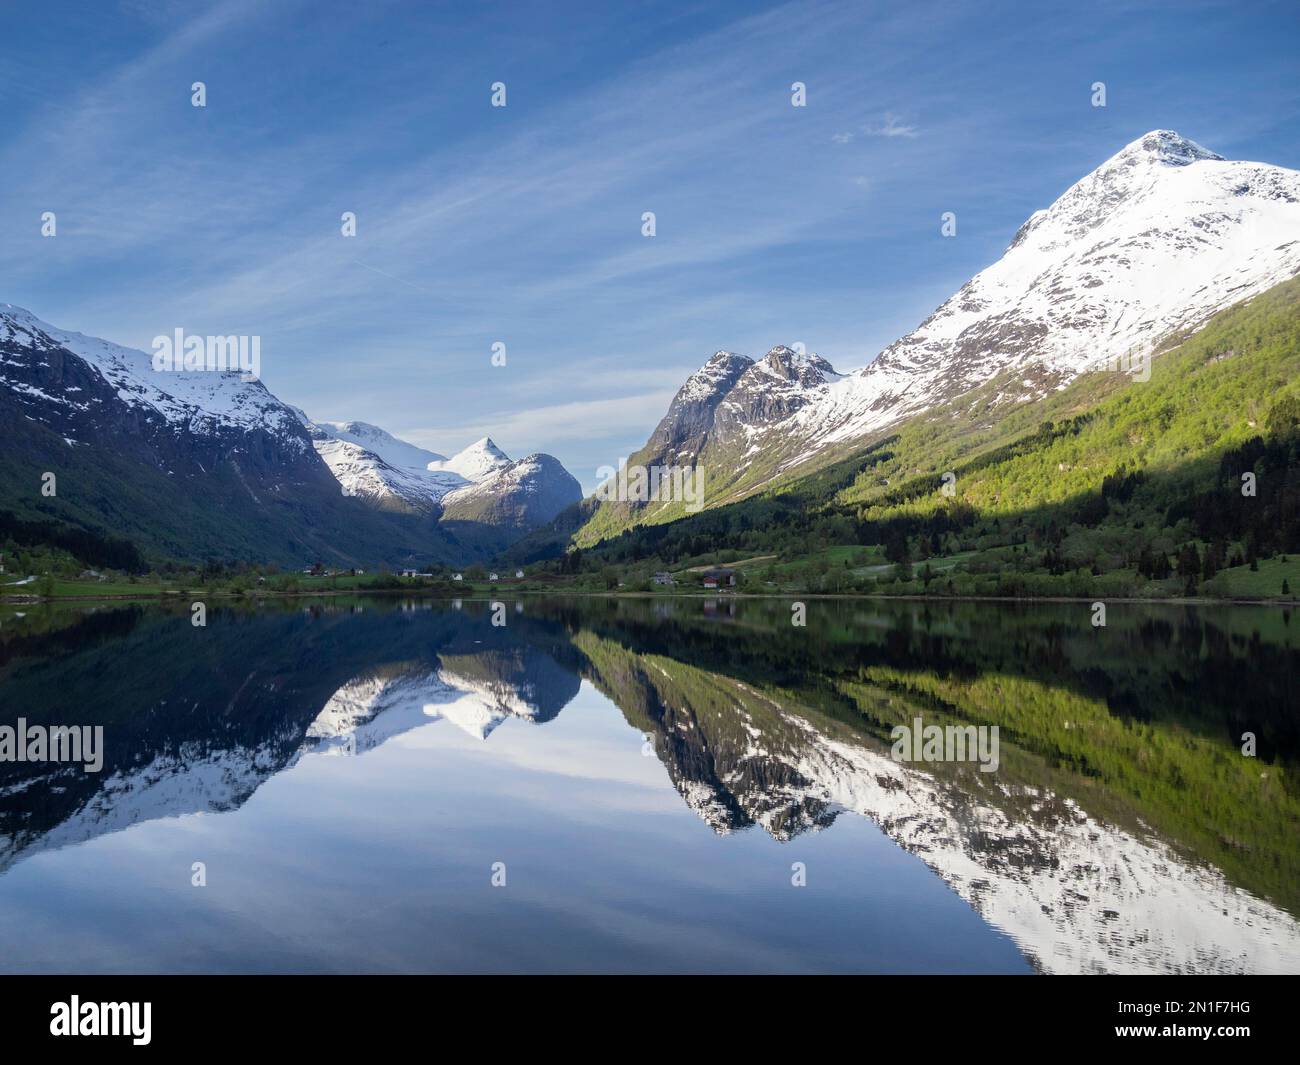 Una vista sulle montagne innevate e le riflessioni sul lago Oldevatnet, all'interno della valle del fiume Oldedalen, Vestland, Norvegia, Scandinavia, Europa Foto Stock